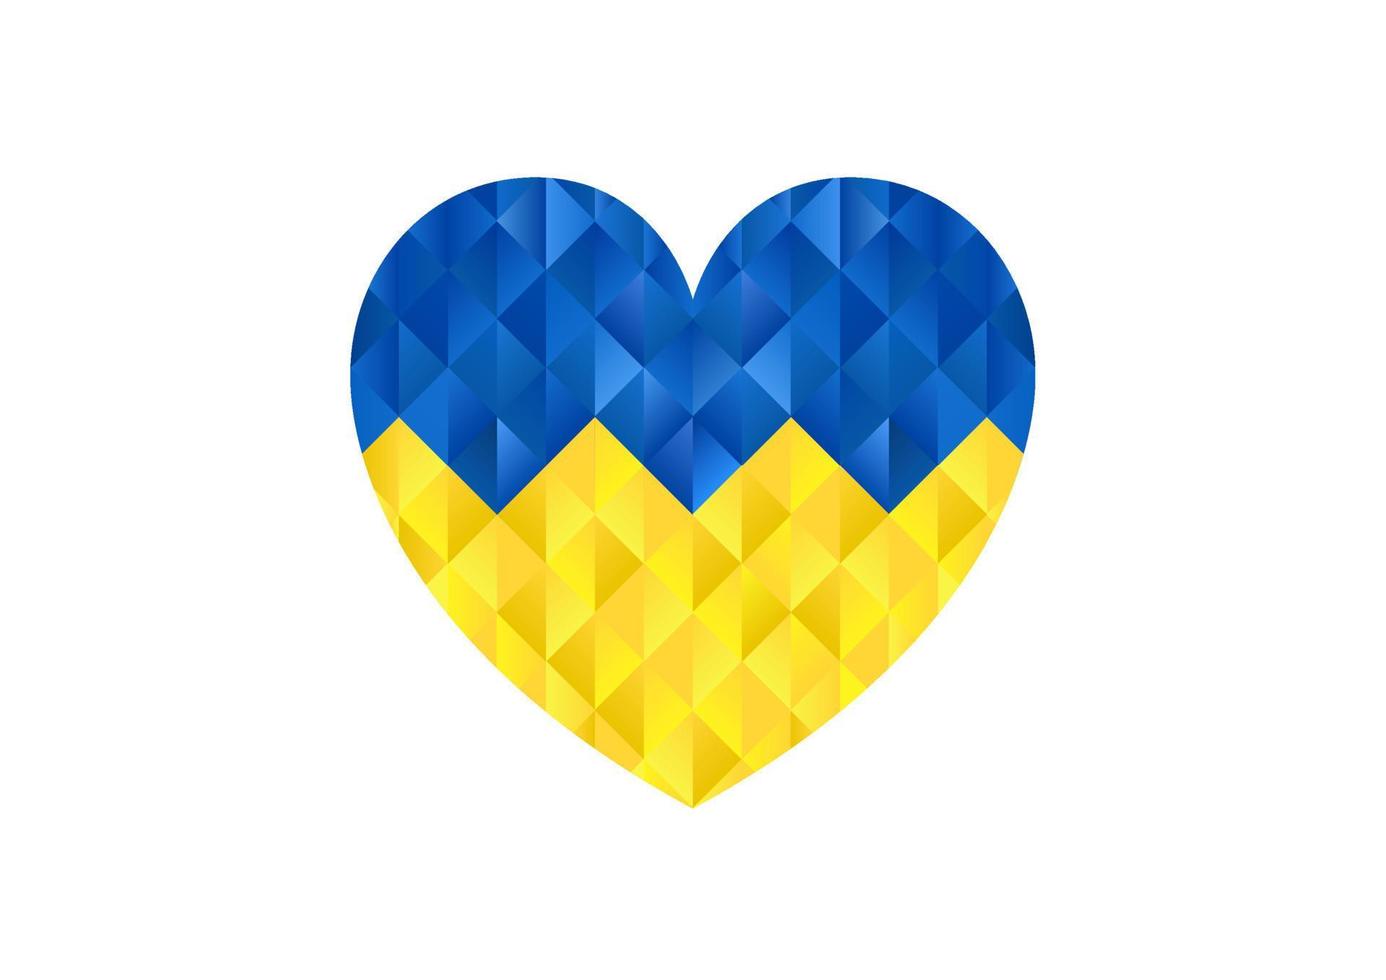 fondo abstracto del corazón con la bandera de ucrania. oren por la paz ucrania ilustración vectorial sobre fondo blanco concepto de orar de luto por la humanidad sin guerra. vector